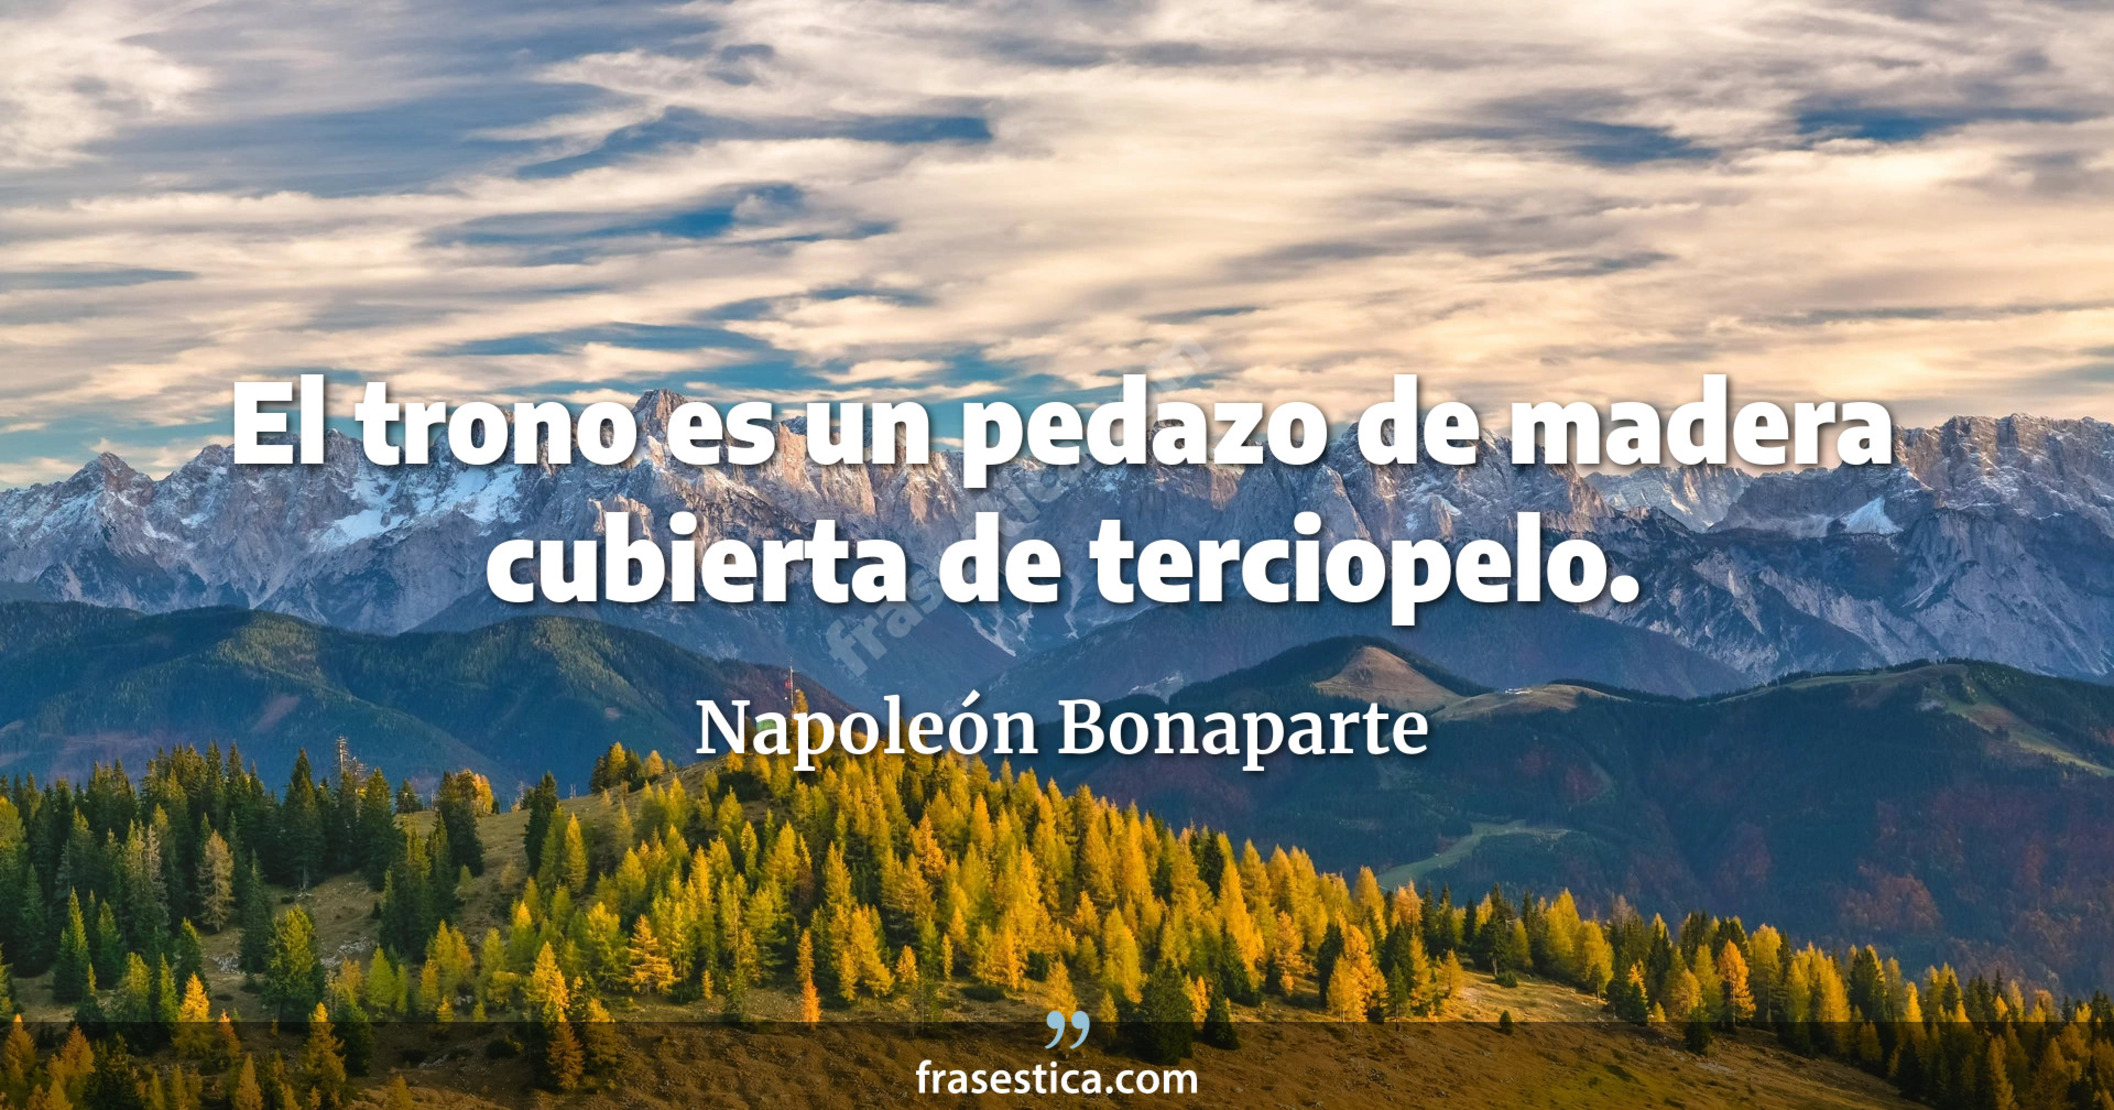 El trono es un pedazo de madera cubierta de terciopelo. - Napoleón Bonaparte